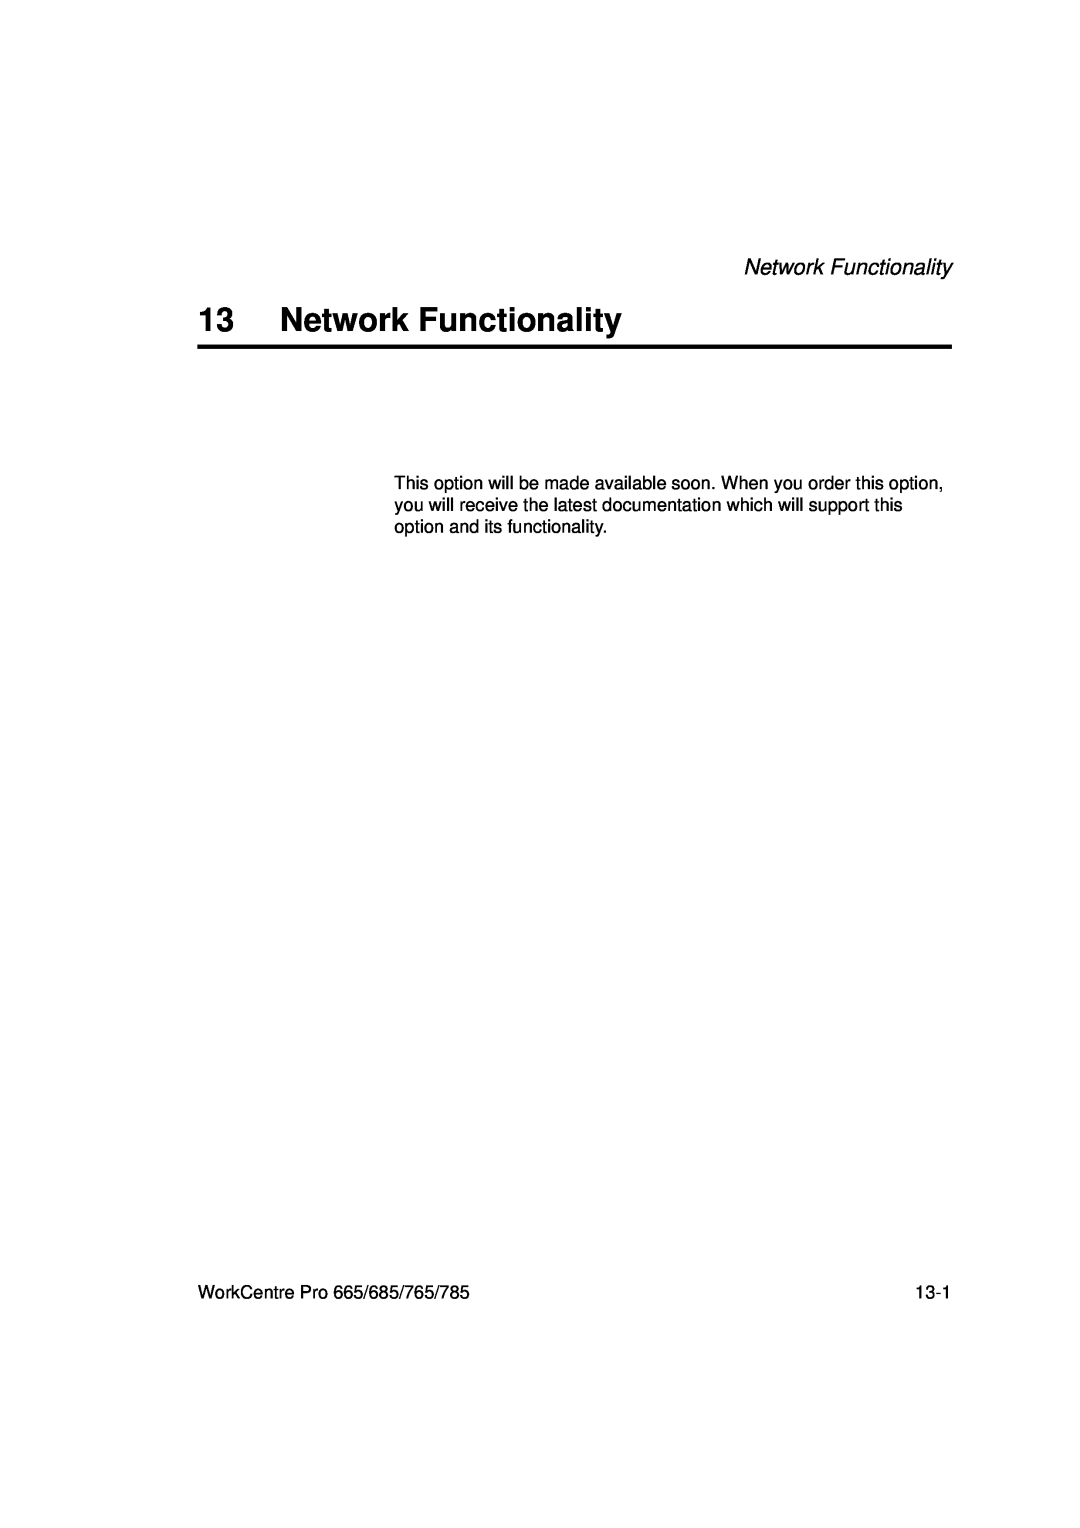 Xerox 665, 765, 685, 785 manual Network Functionality 